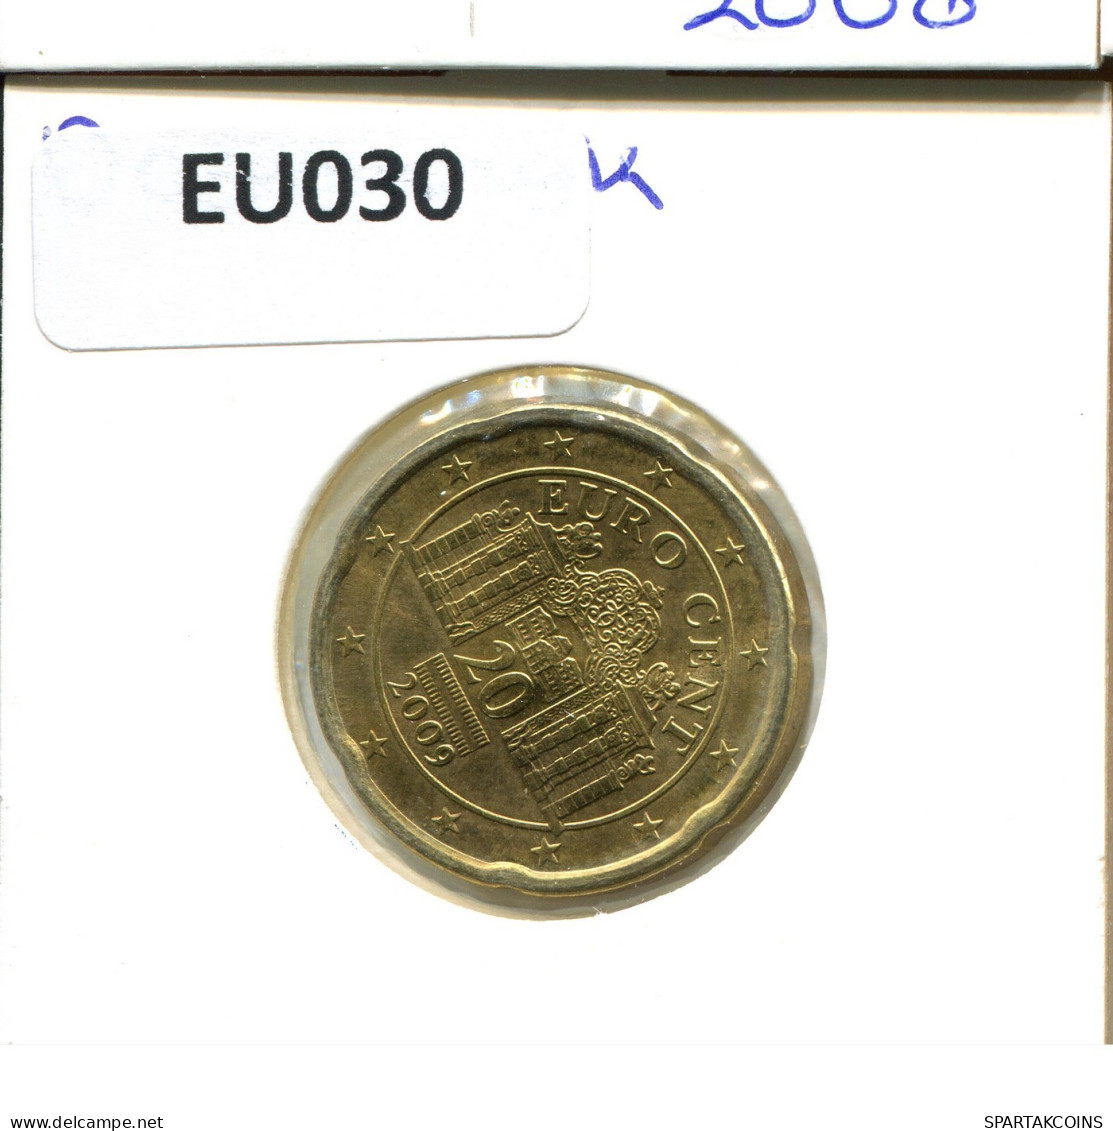 20 EURO CENTS 2009 AUTRICHE AUSTRIA Pièce #EU030.F.A - Oesterreich